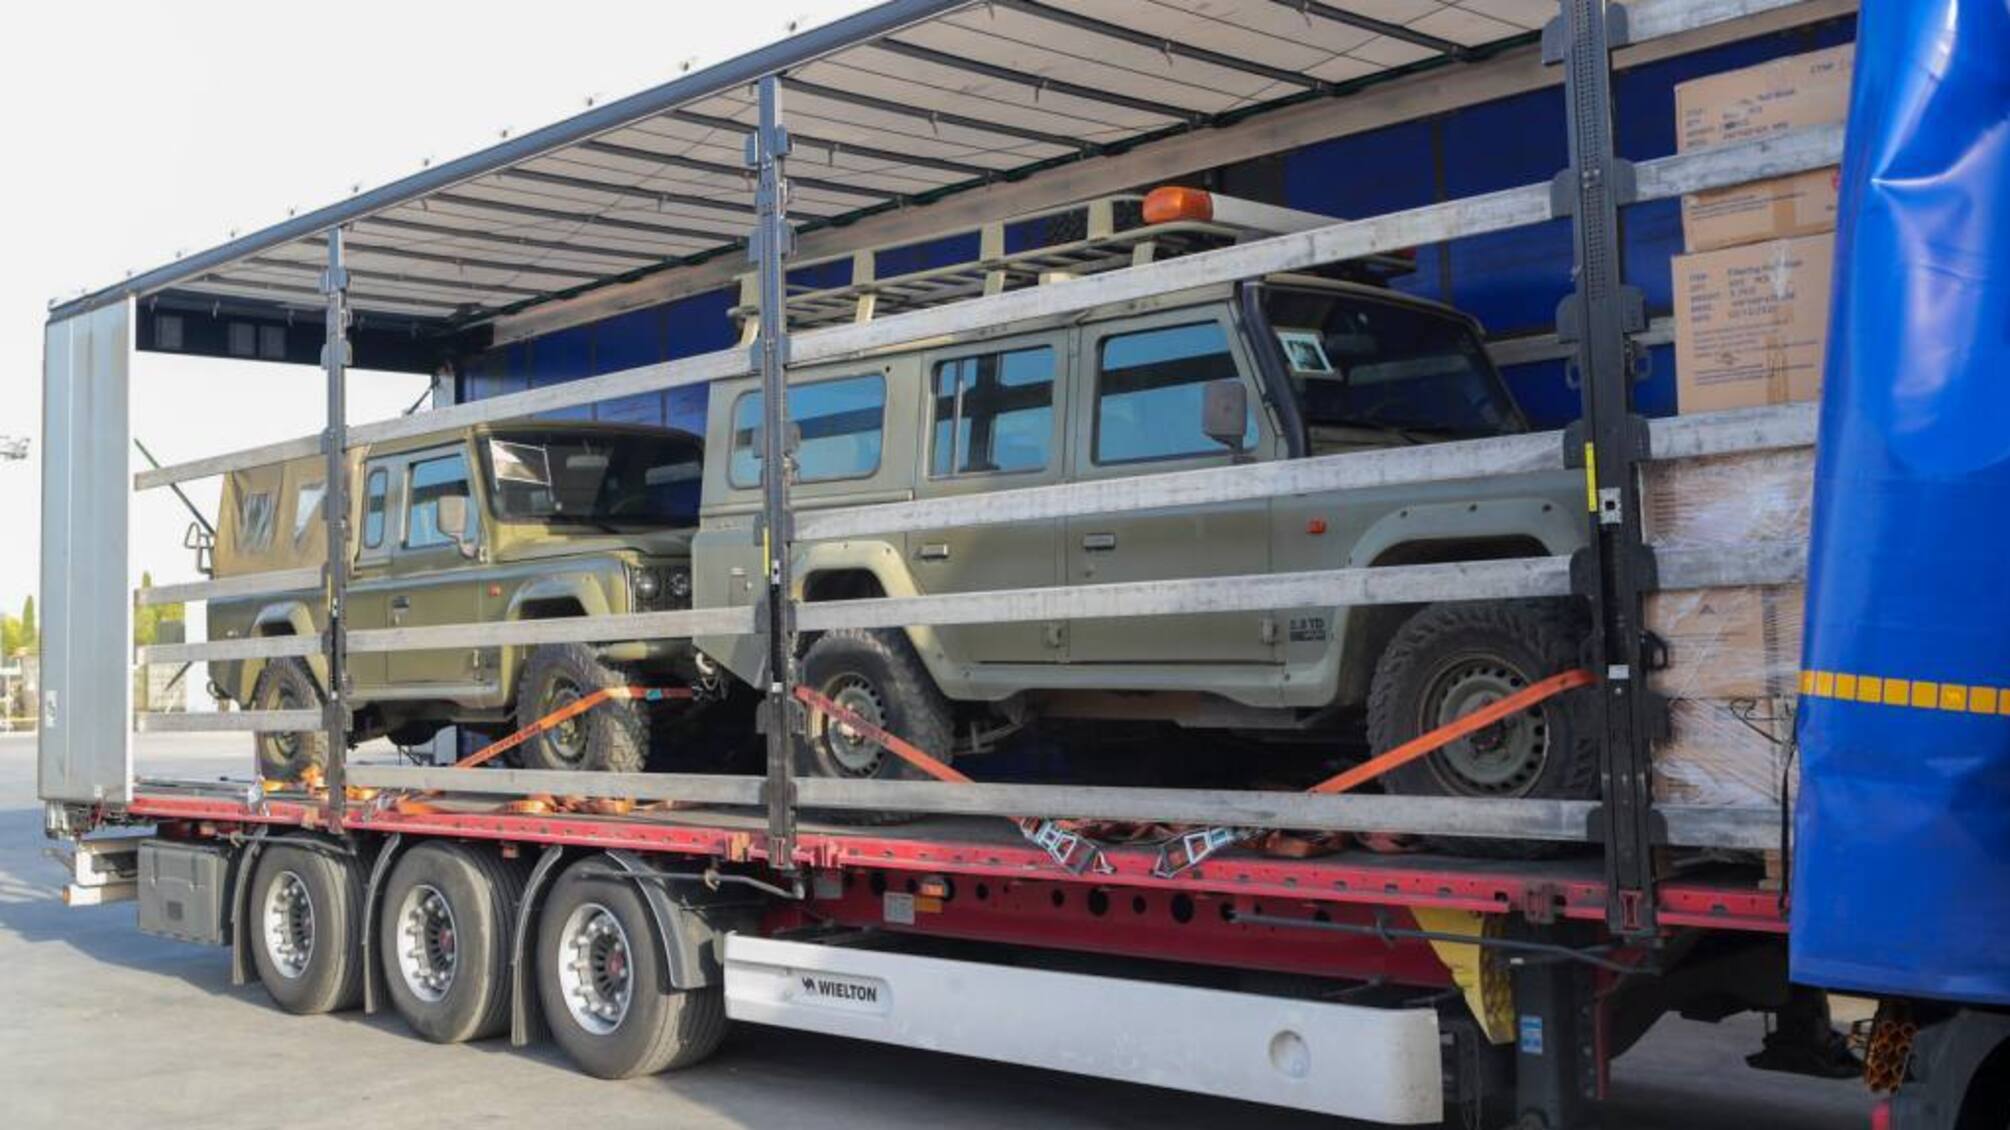 Испания предоставила Украине масштабную военную помощь: системы ПВО, бронетехнику и 300 тонн военных грузов